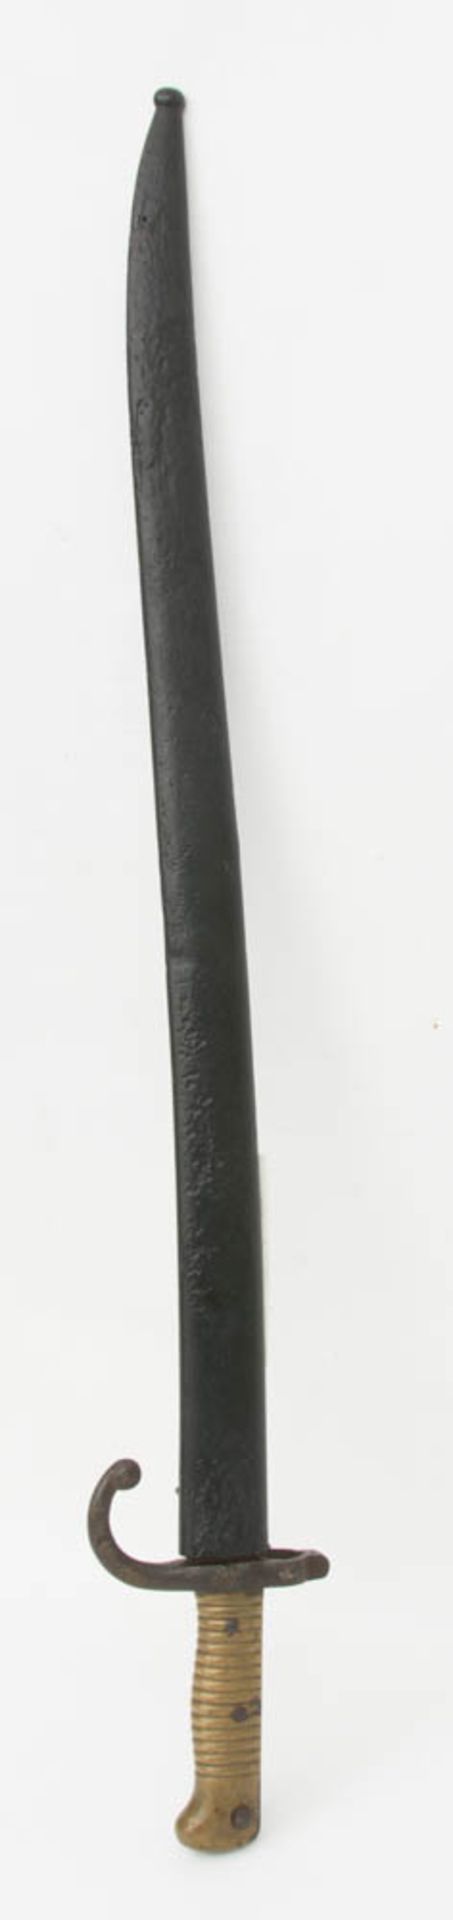 Französisches Jatagan Bajonett, 1869.57 cm lange Klinge mit trogförmiger Kehlung, au - Image 2 of 6